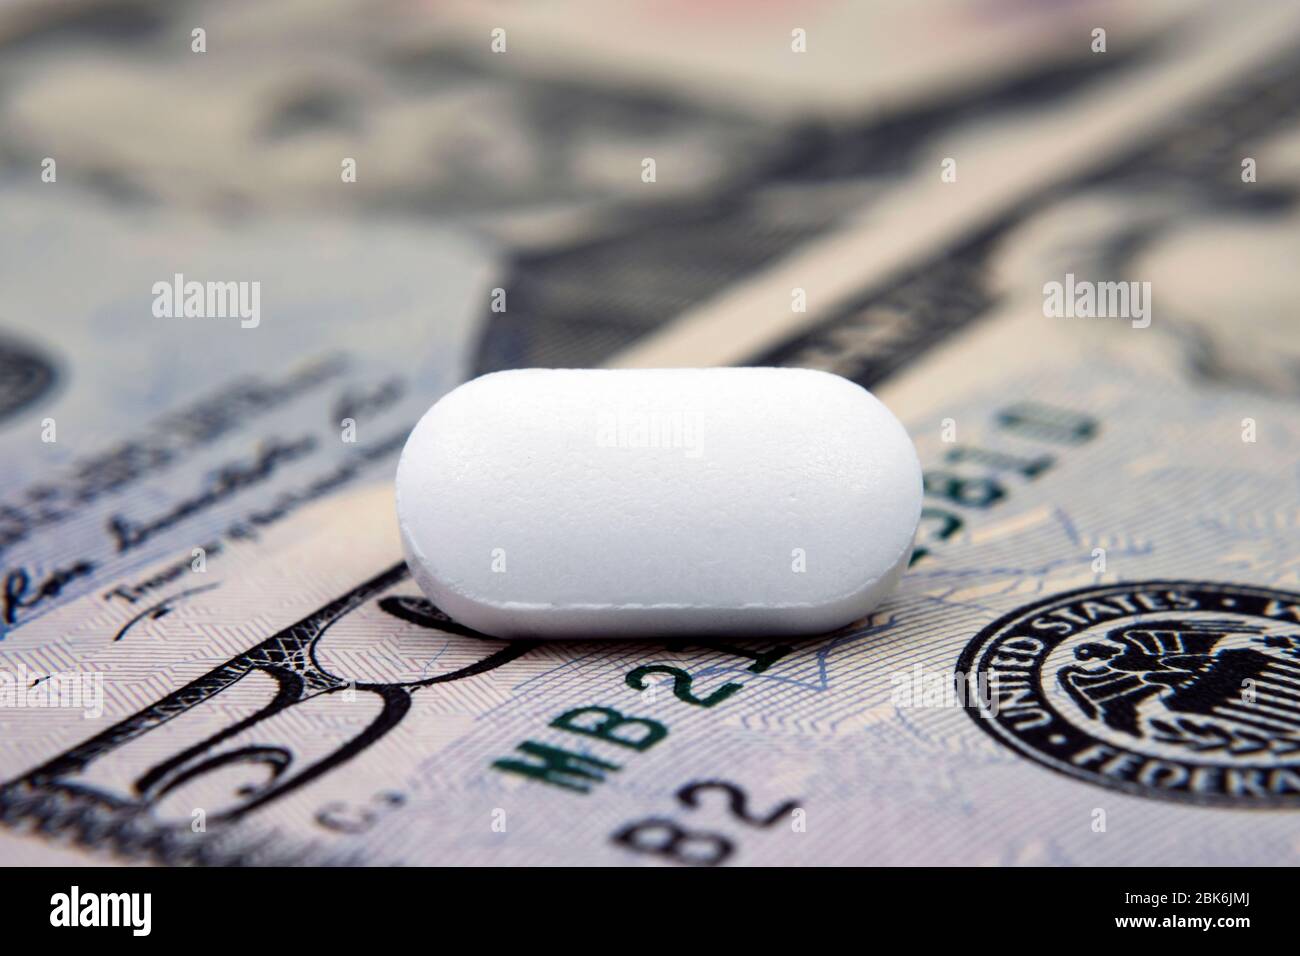 Pille auf 50 Dollar Banknote. Illustrativ für den Gewinn aus der pharmazeutischen Industrie, Kosten für Pillen und medizinische Versorgung. Konzeptfoto. Stockfoto